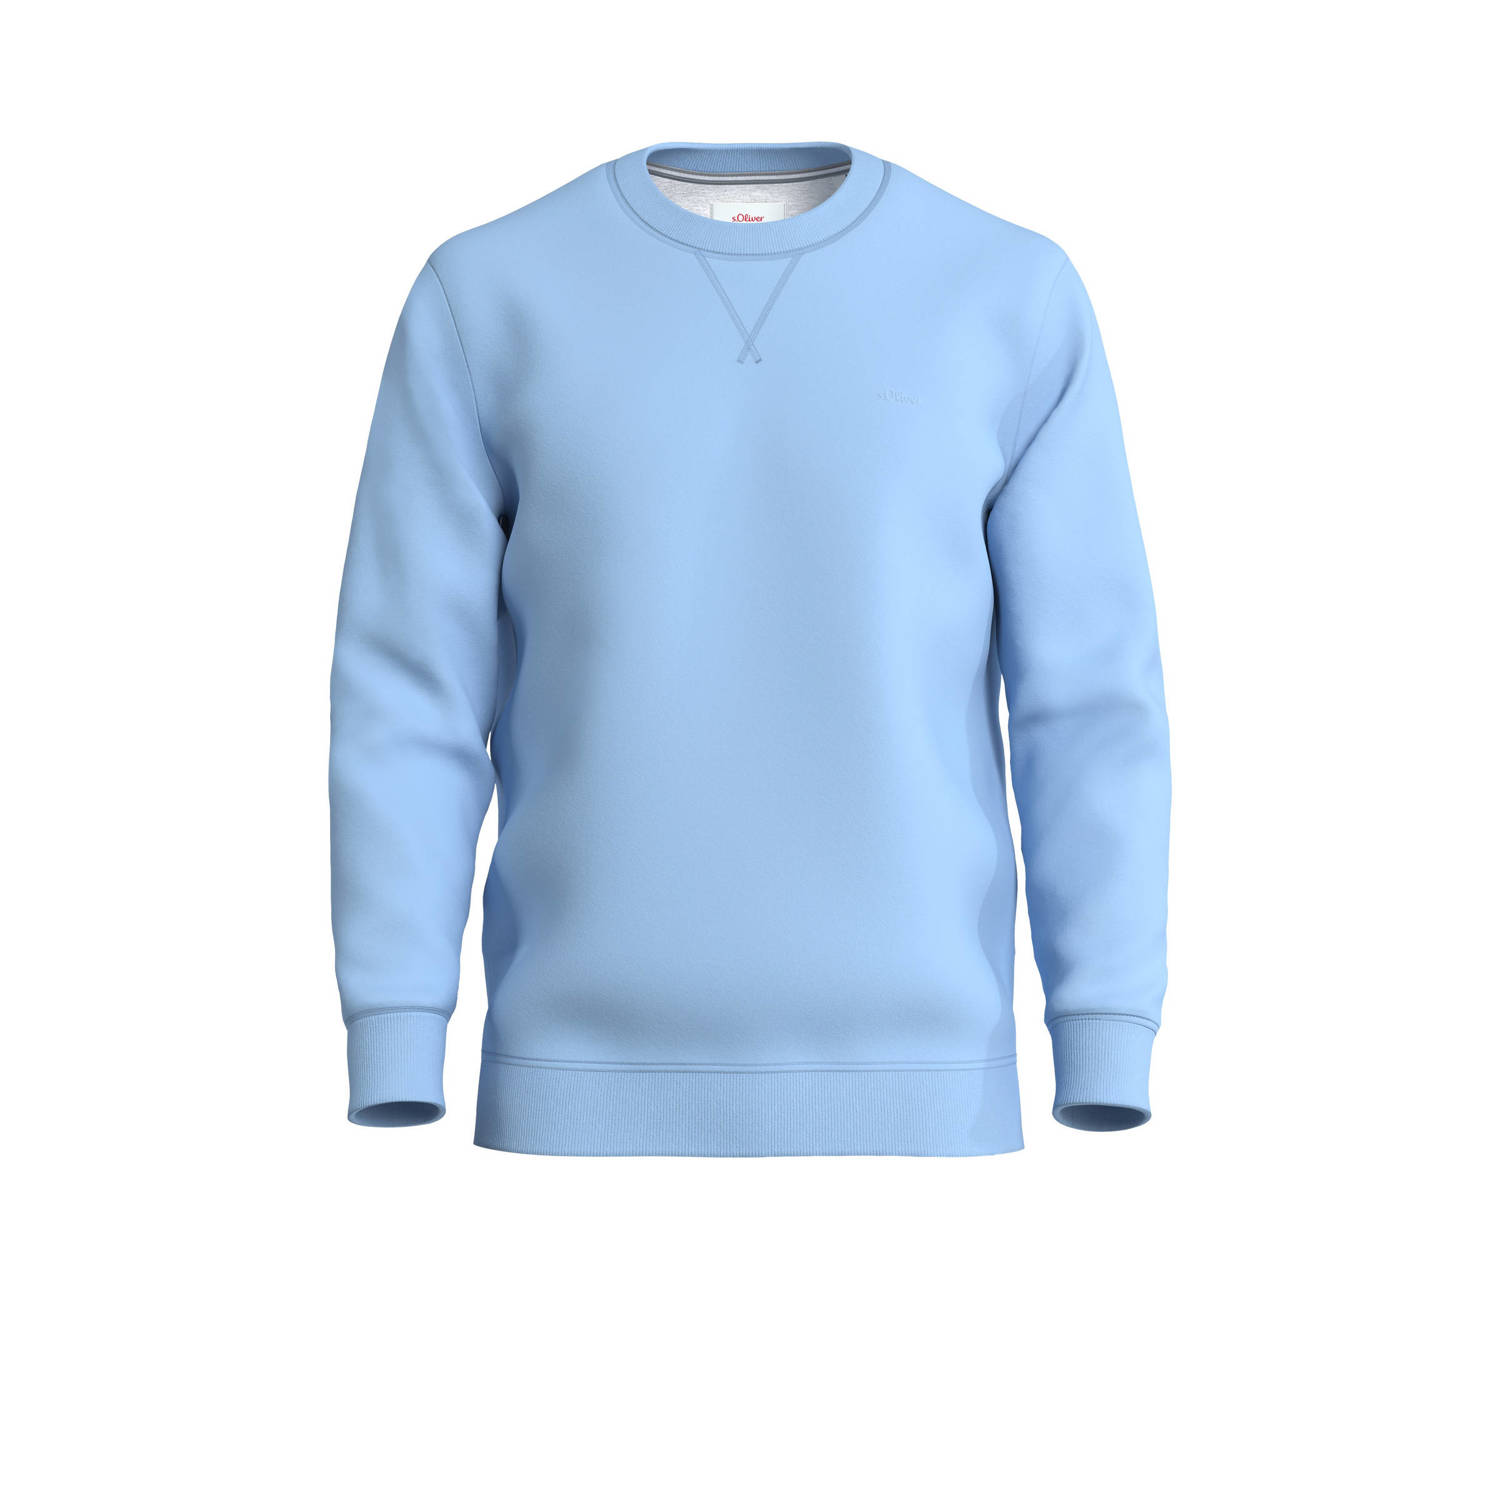 s.Oliver sweater met logo lichtblauw